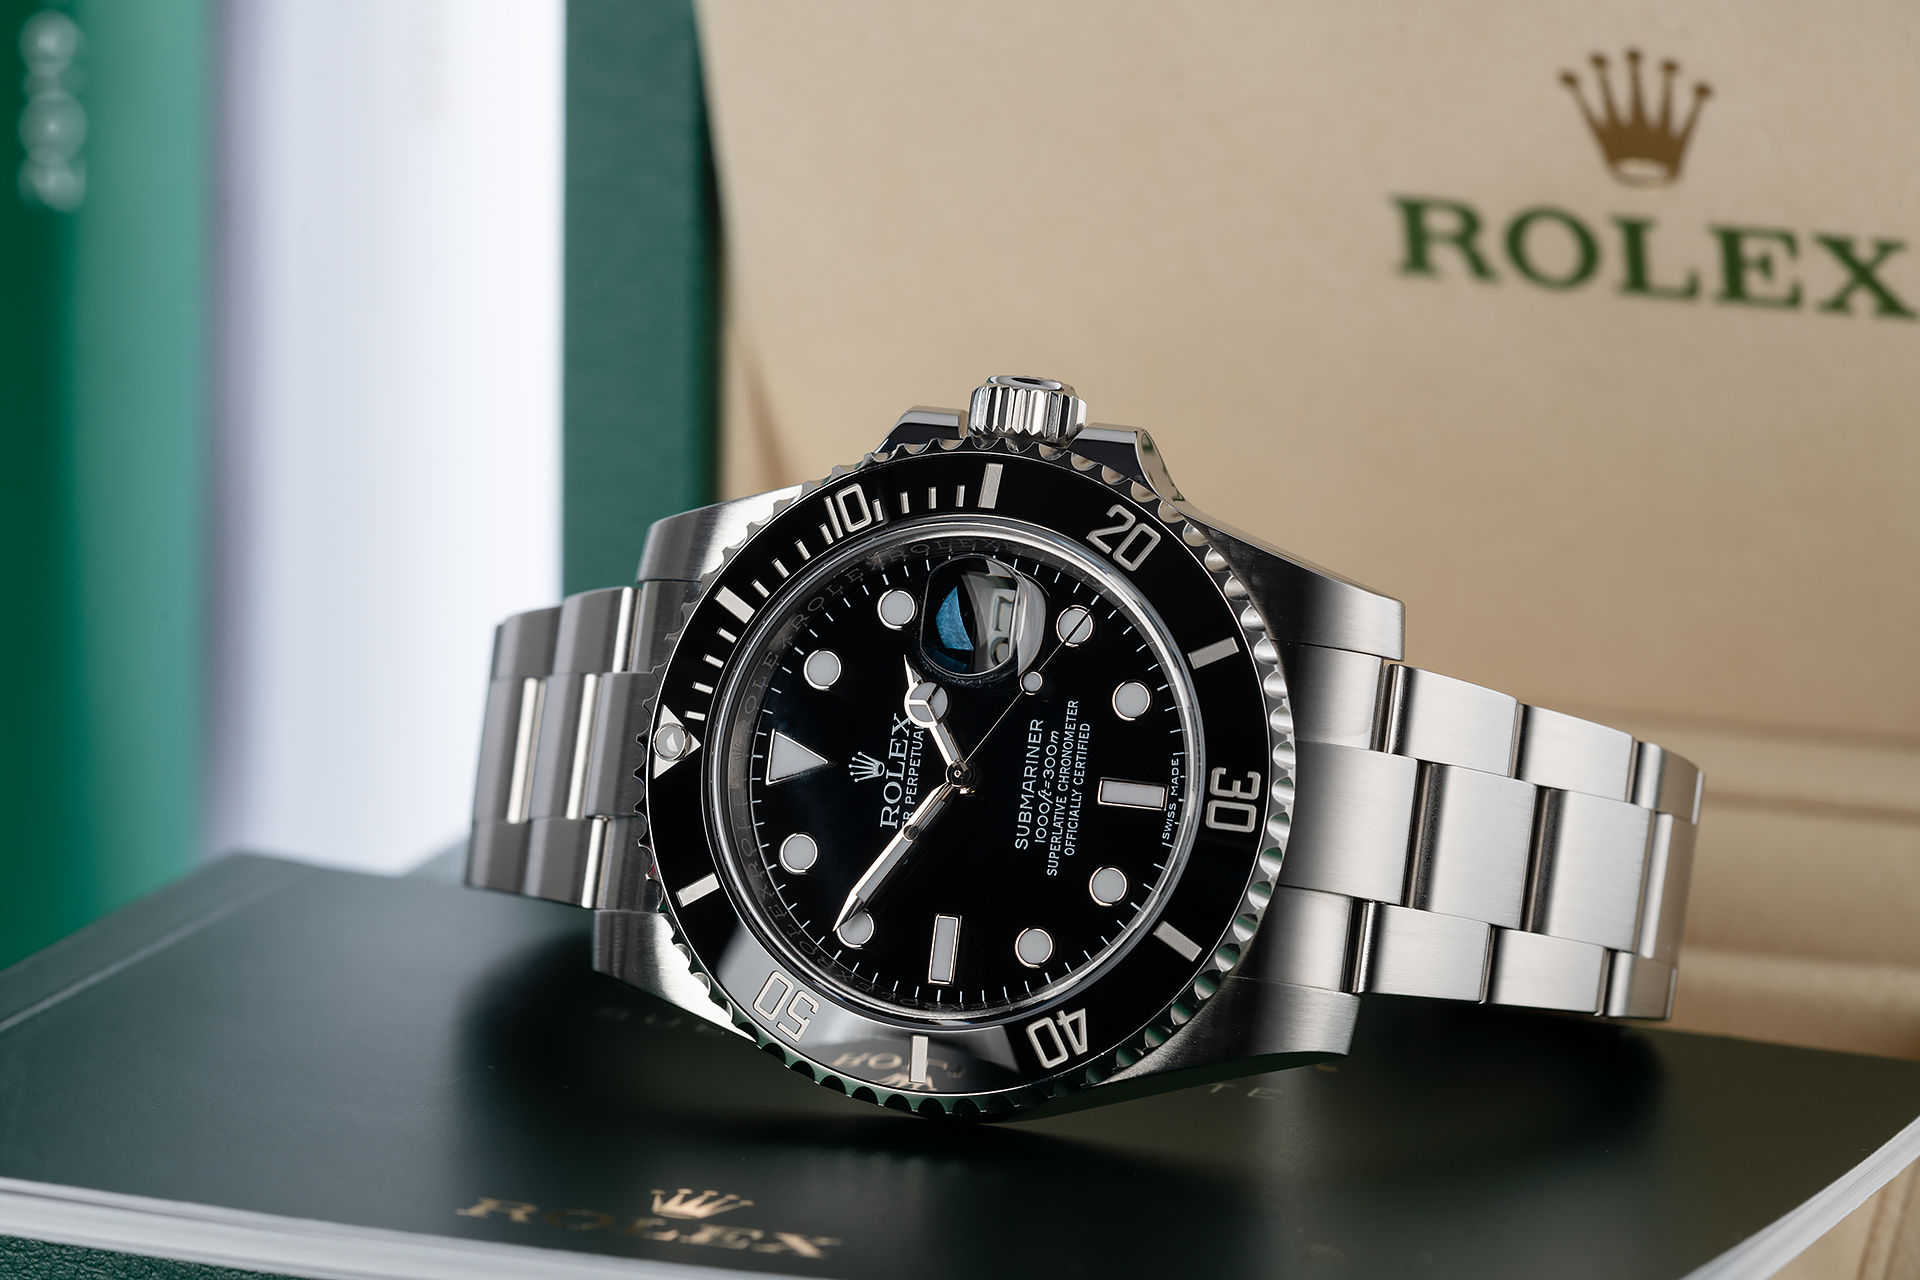 ref 116610LN | Under Rolex Warranty | Rolex Submariner Date